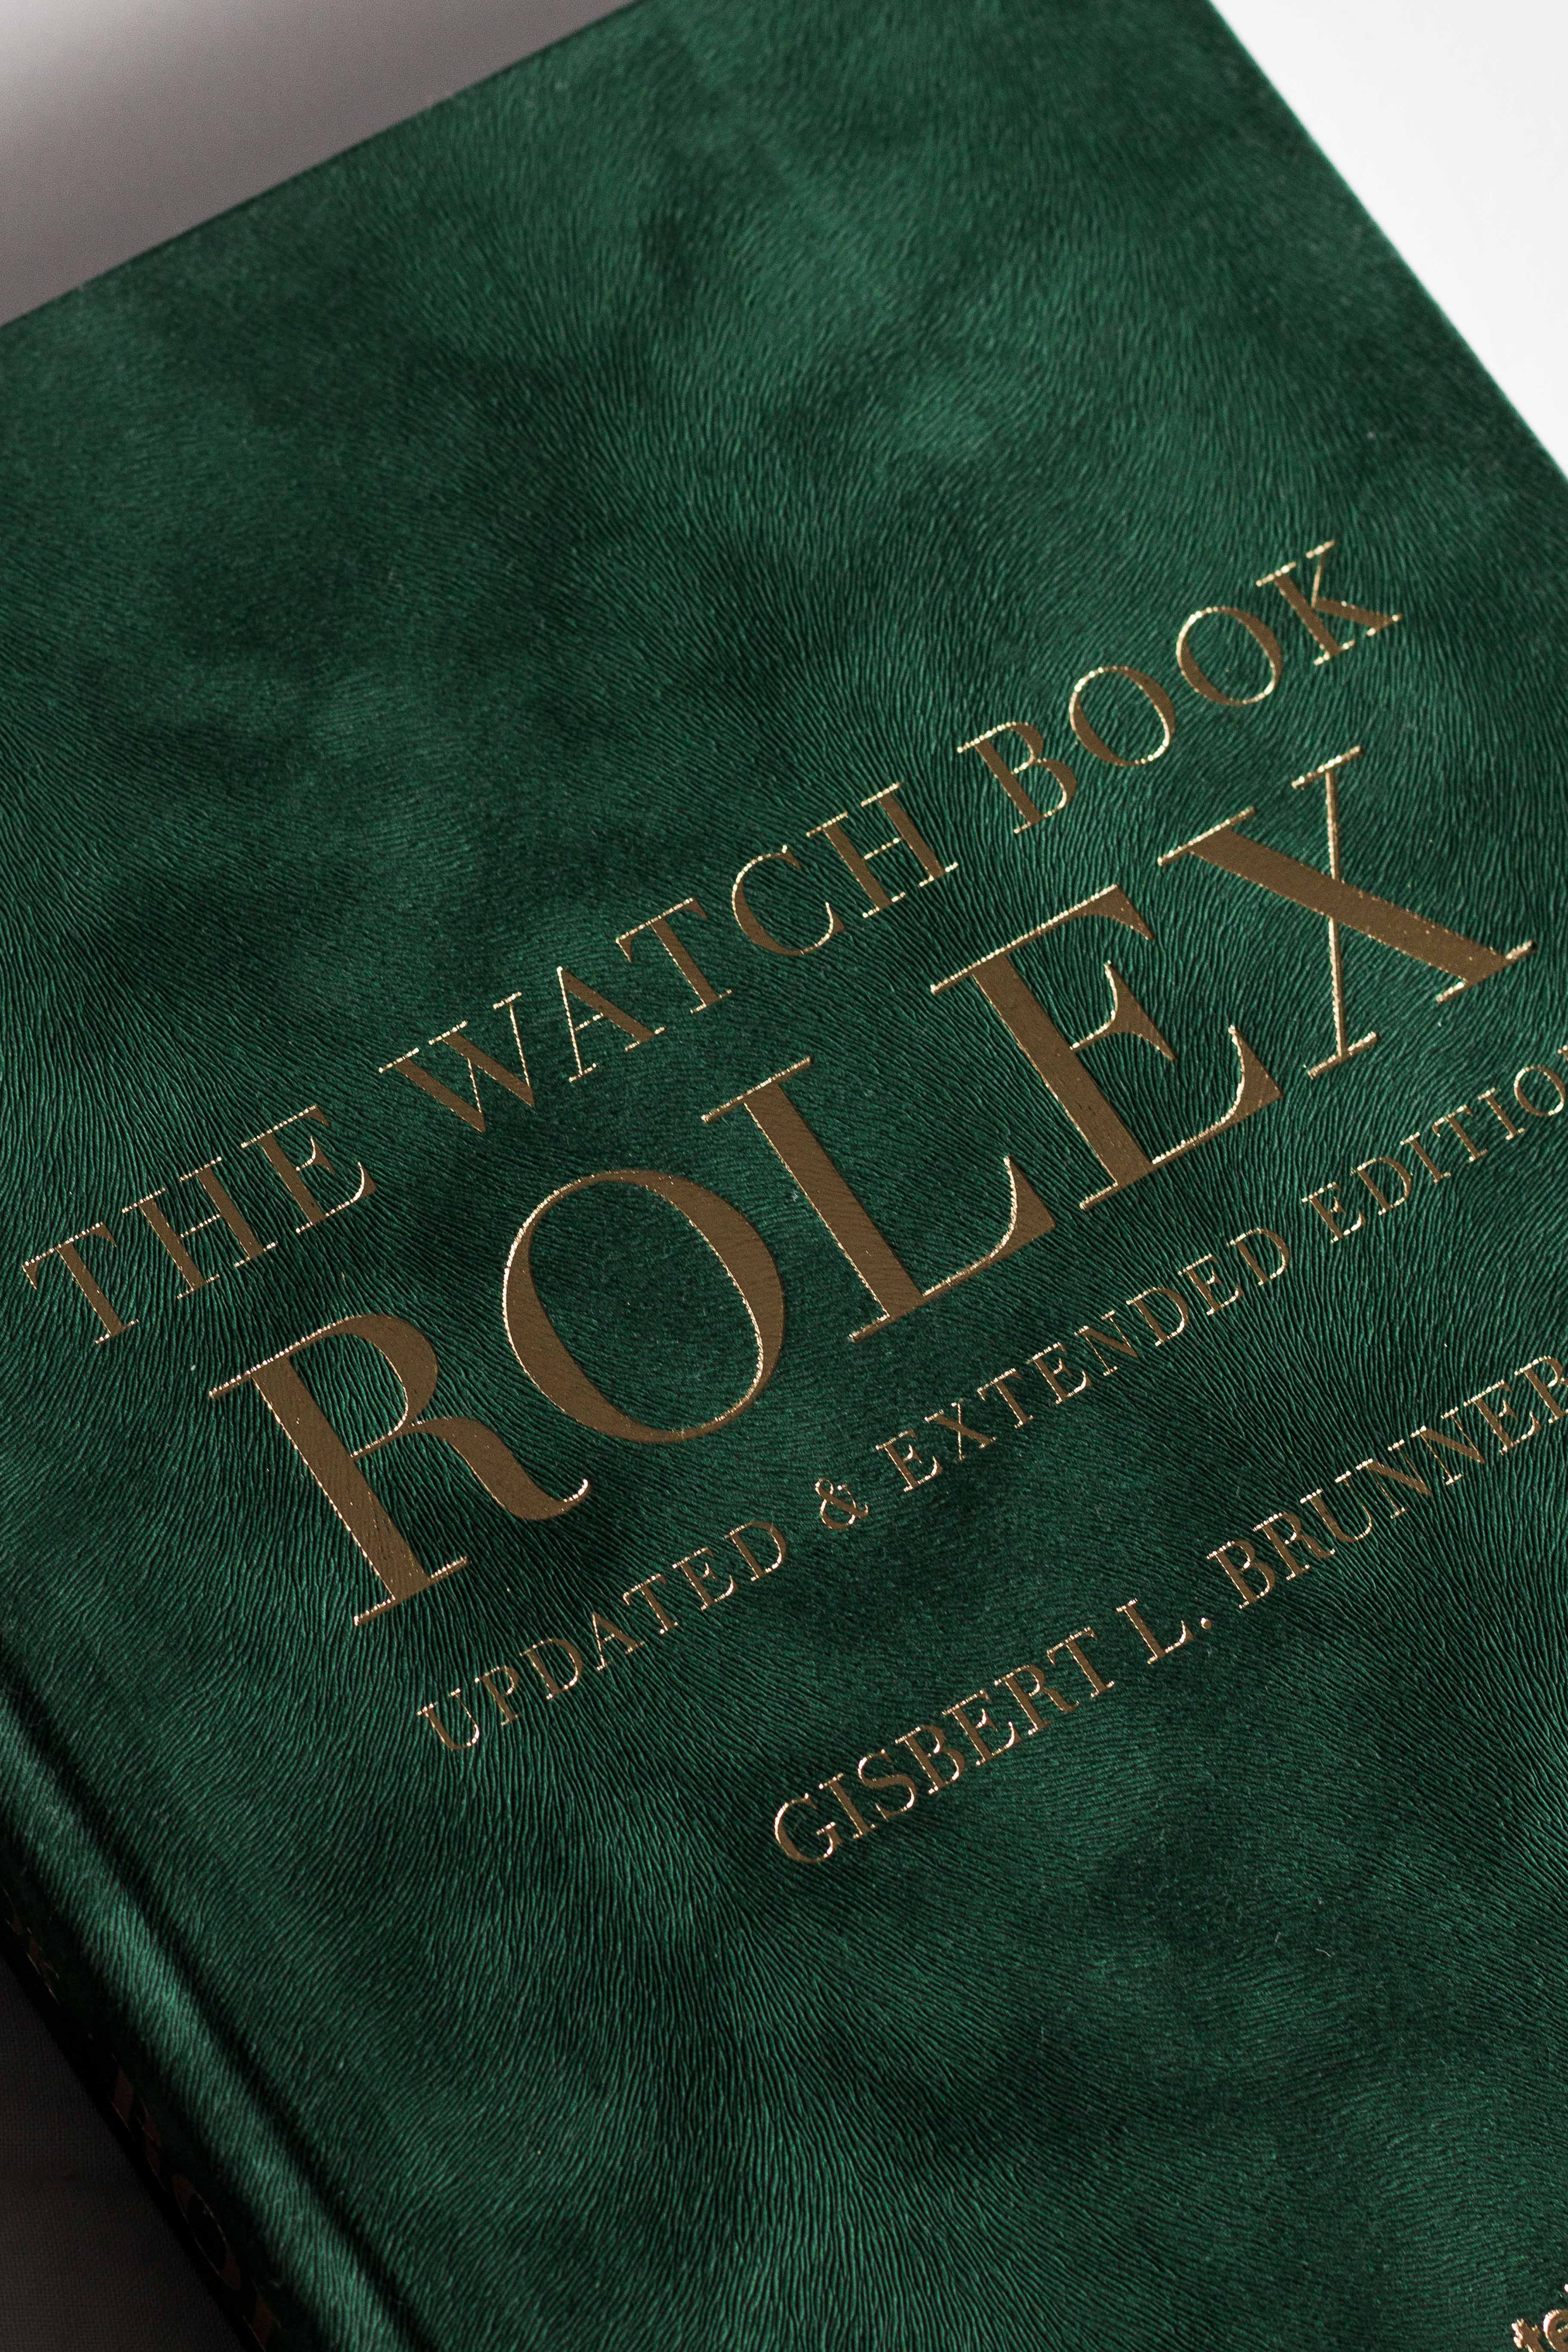 The Watch Book Rolex by Gisbert L. Brunner 